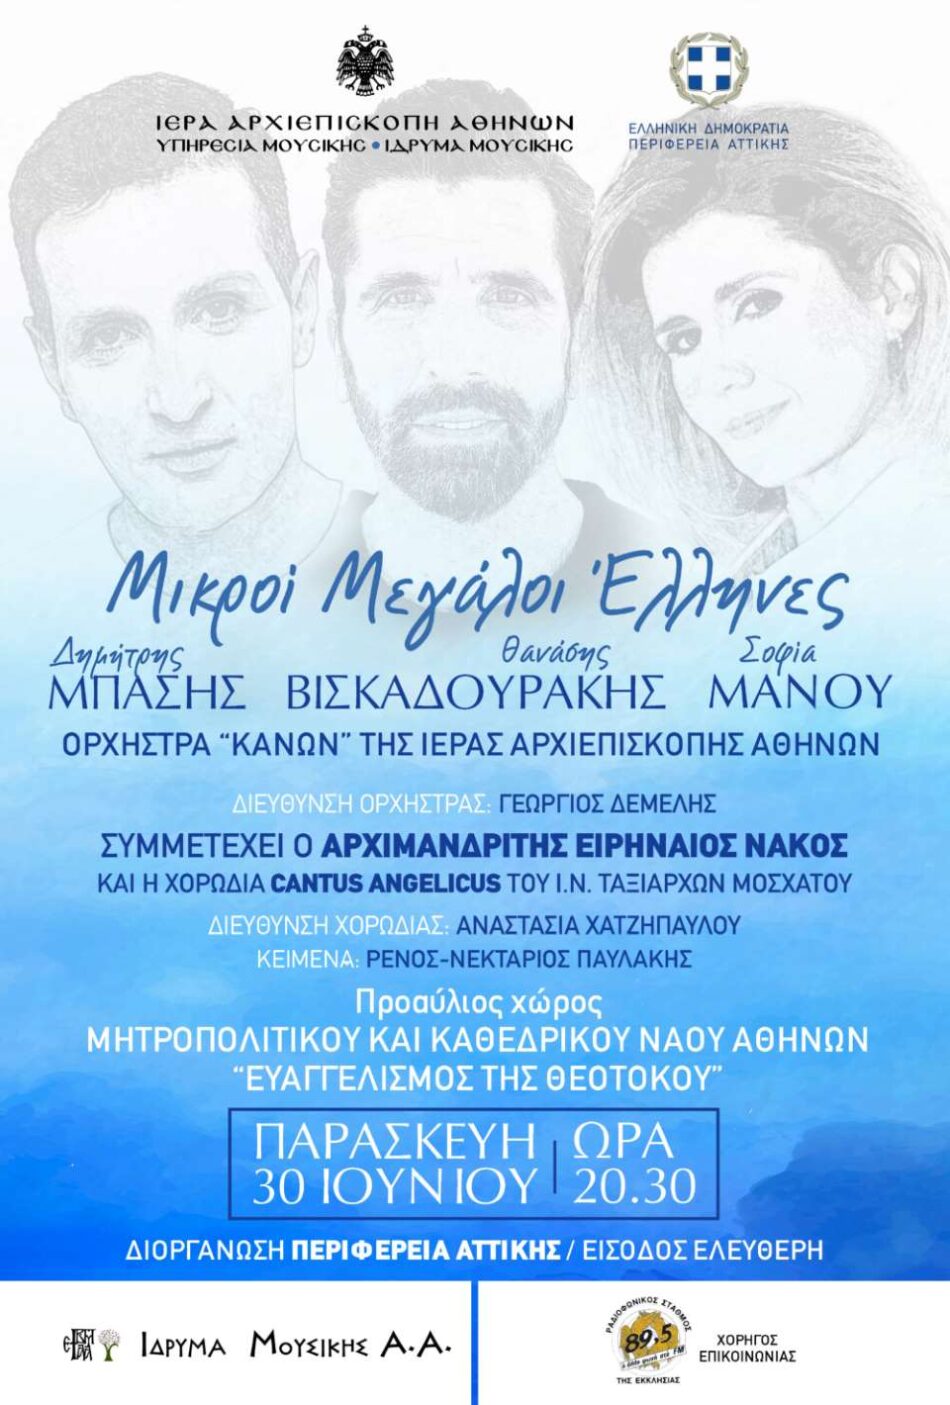 Ο Δημήτρης Μπάσης και η Σοφία Μάνου τραγουδούν στο προαύλιο του Μητροπολιτικού Ναού Αθηνών                                                                                                                                                                         950x1405